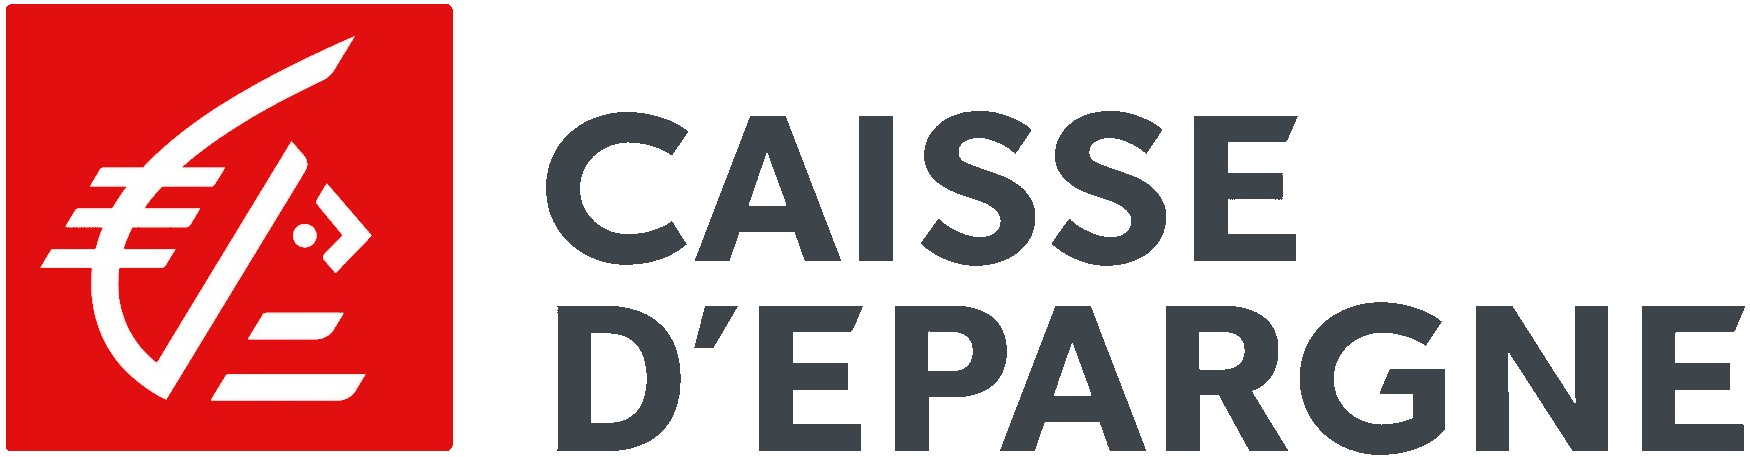 Logo de la caisse d'épargne, banque française et assurances pour particuliers et professionnels